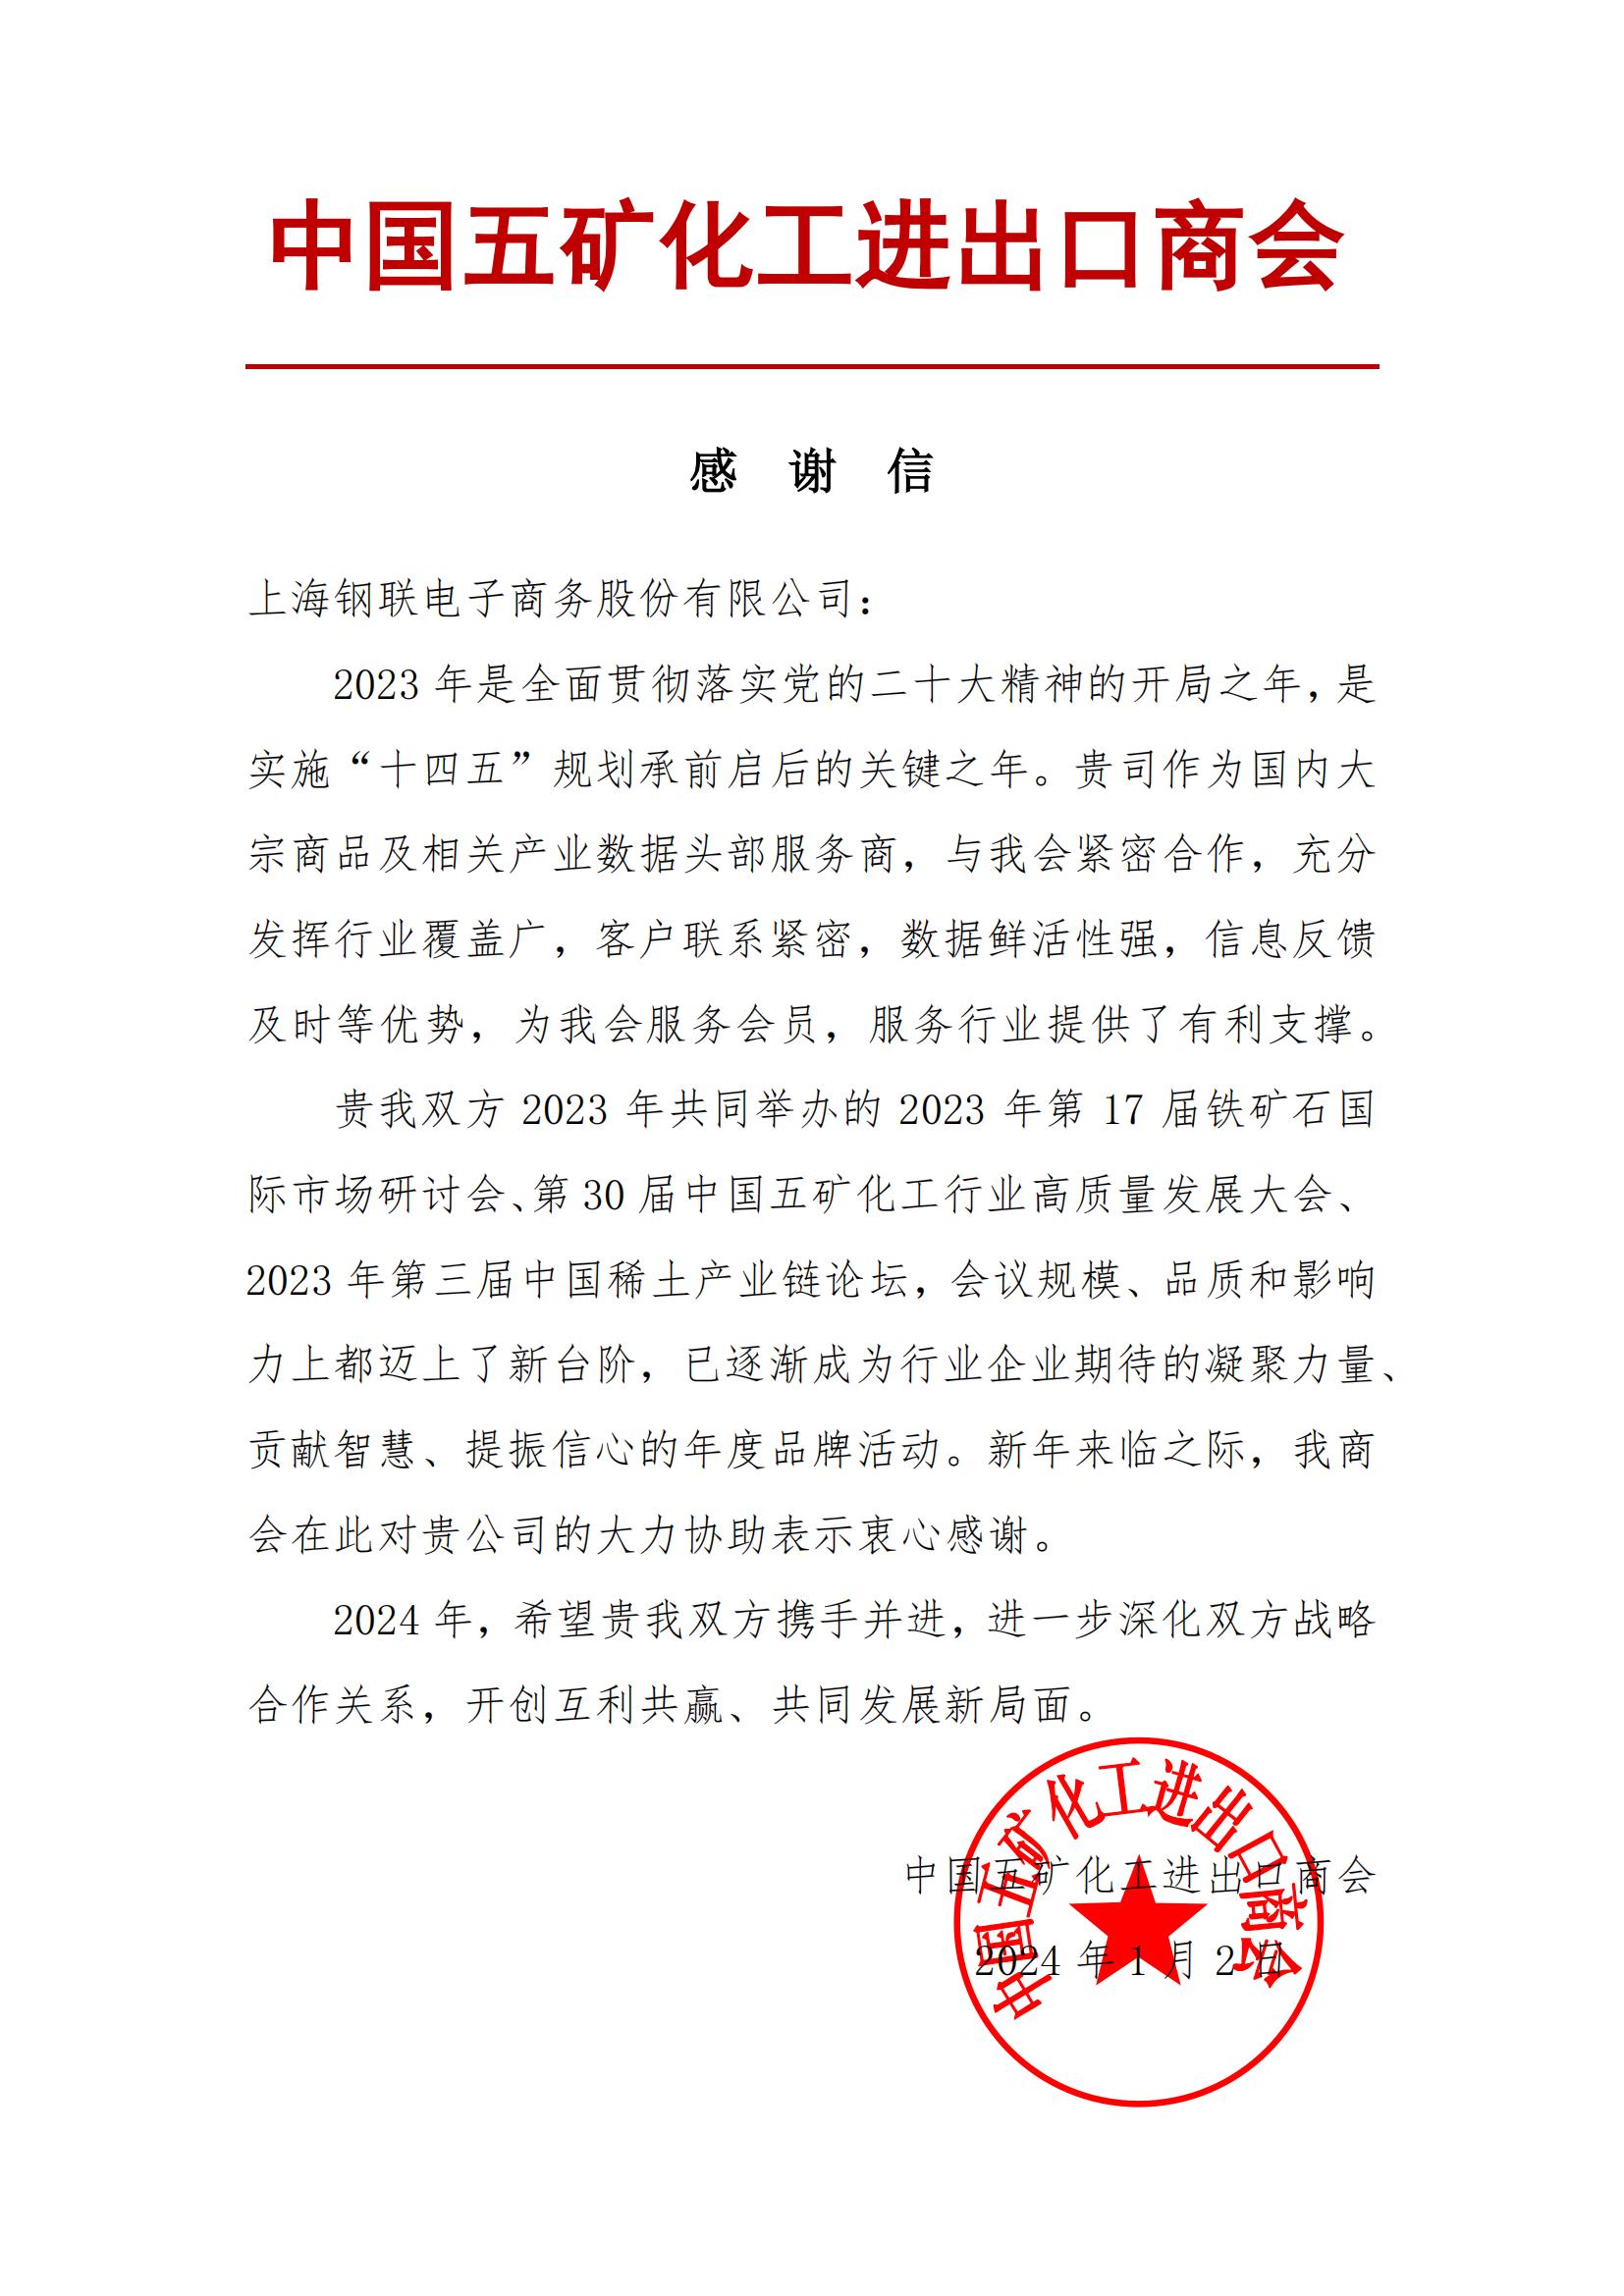 上海钢联收到中国五矿化工进出口商会感谢信